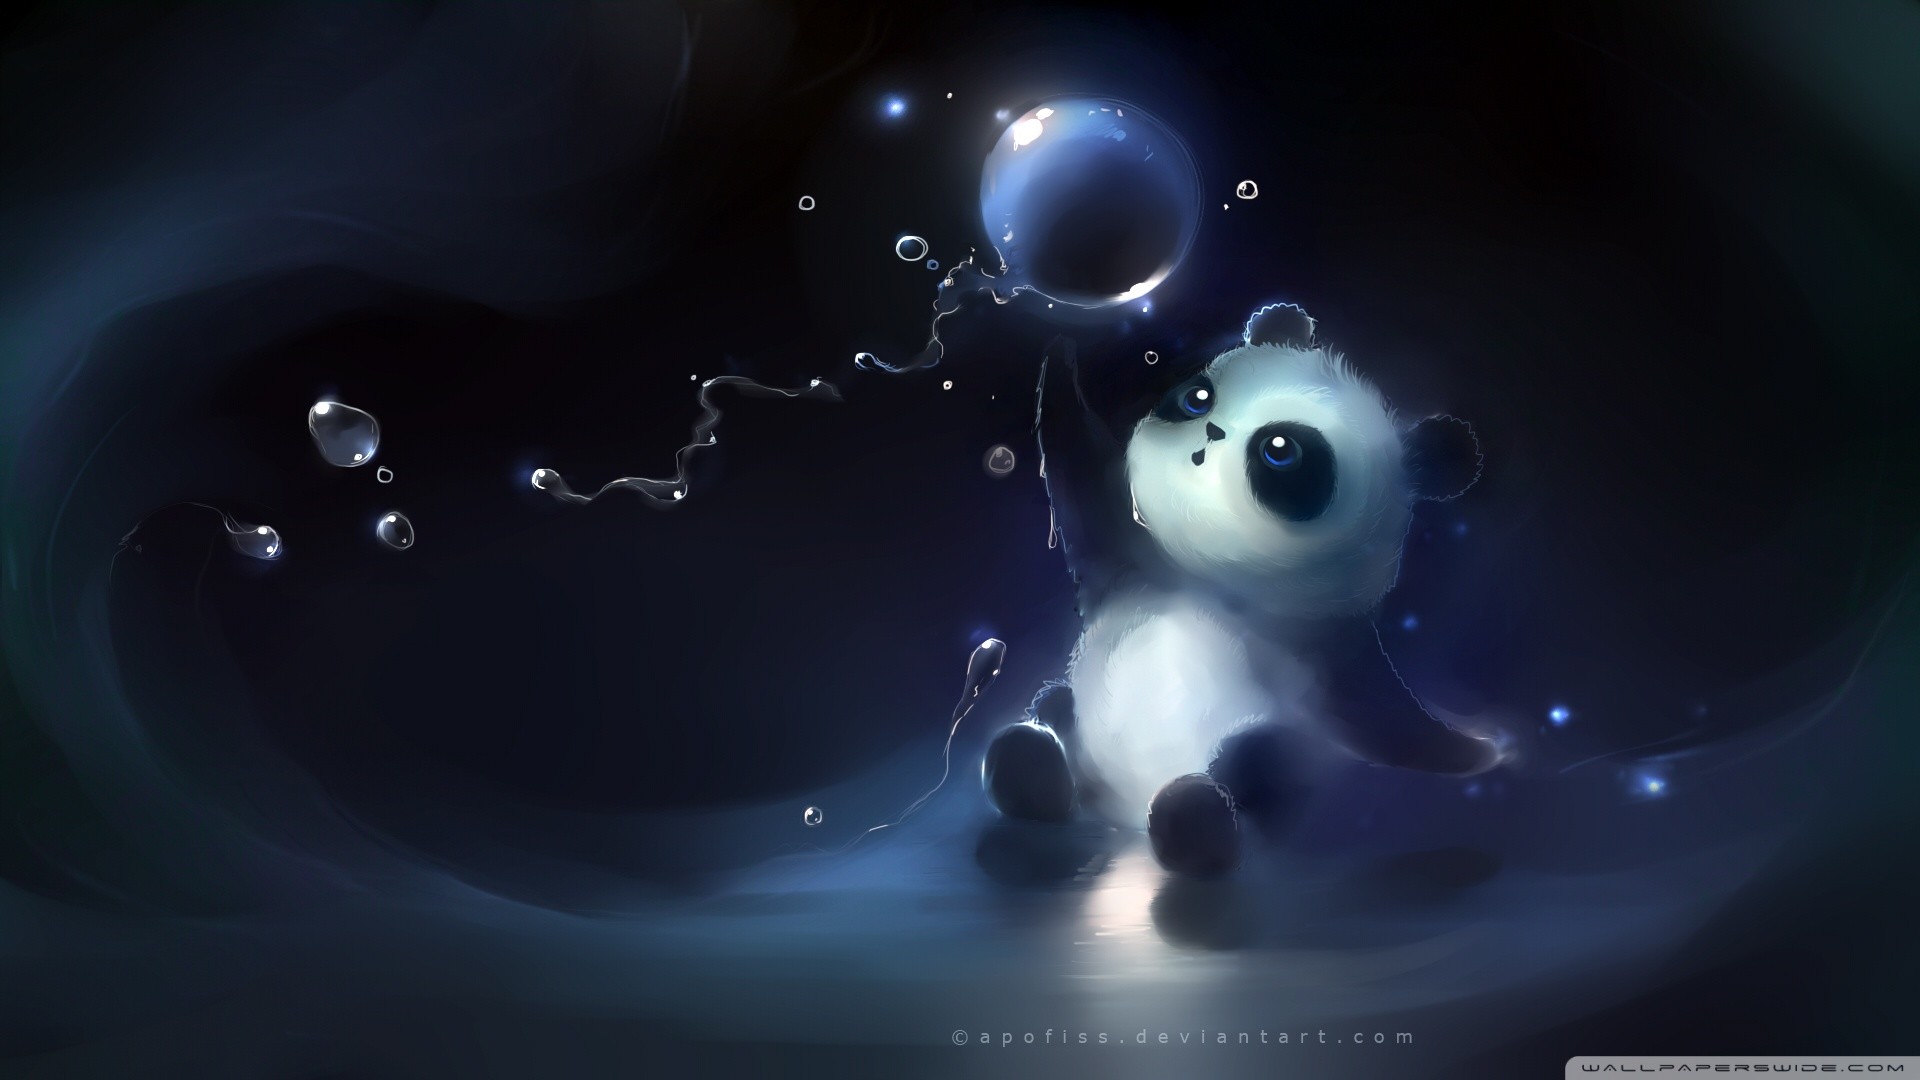 1920x1080 Cute panda catching a bubble - Artwork wallpaper